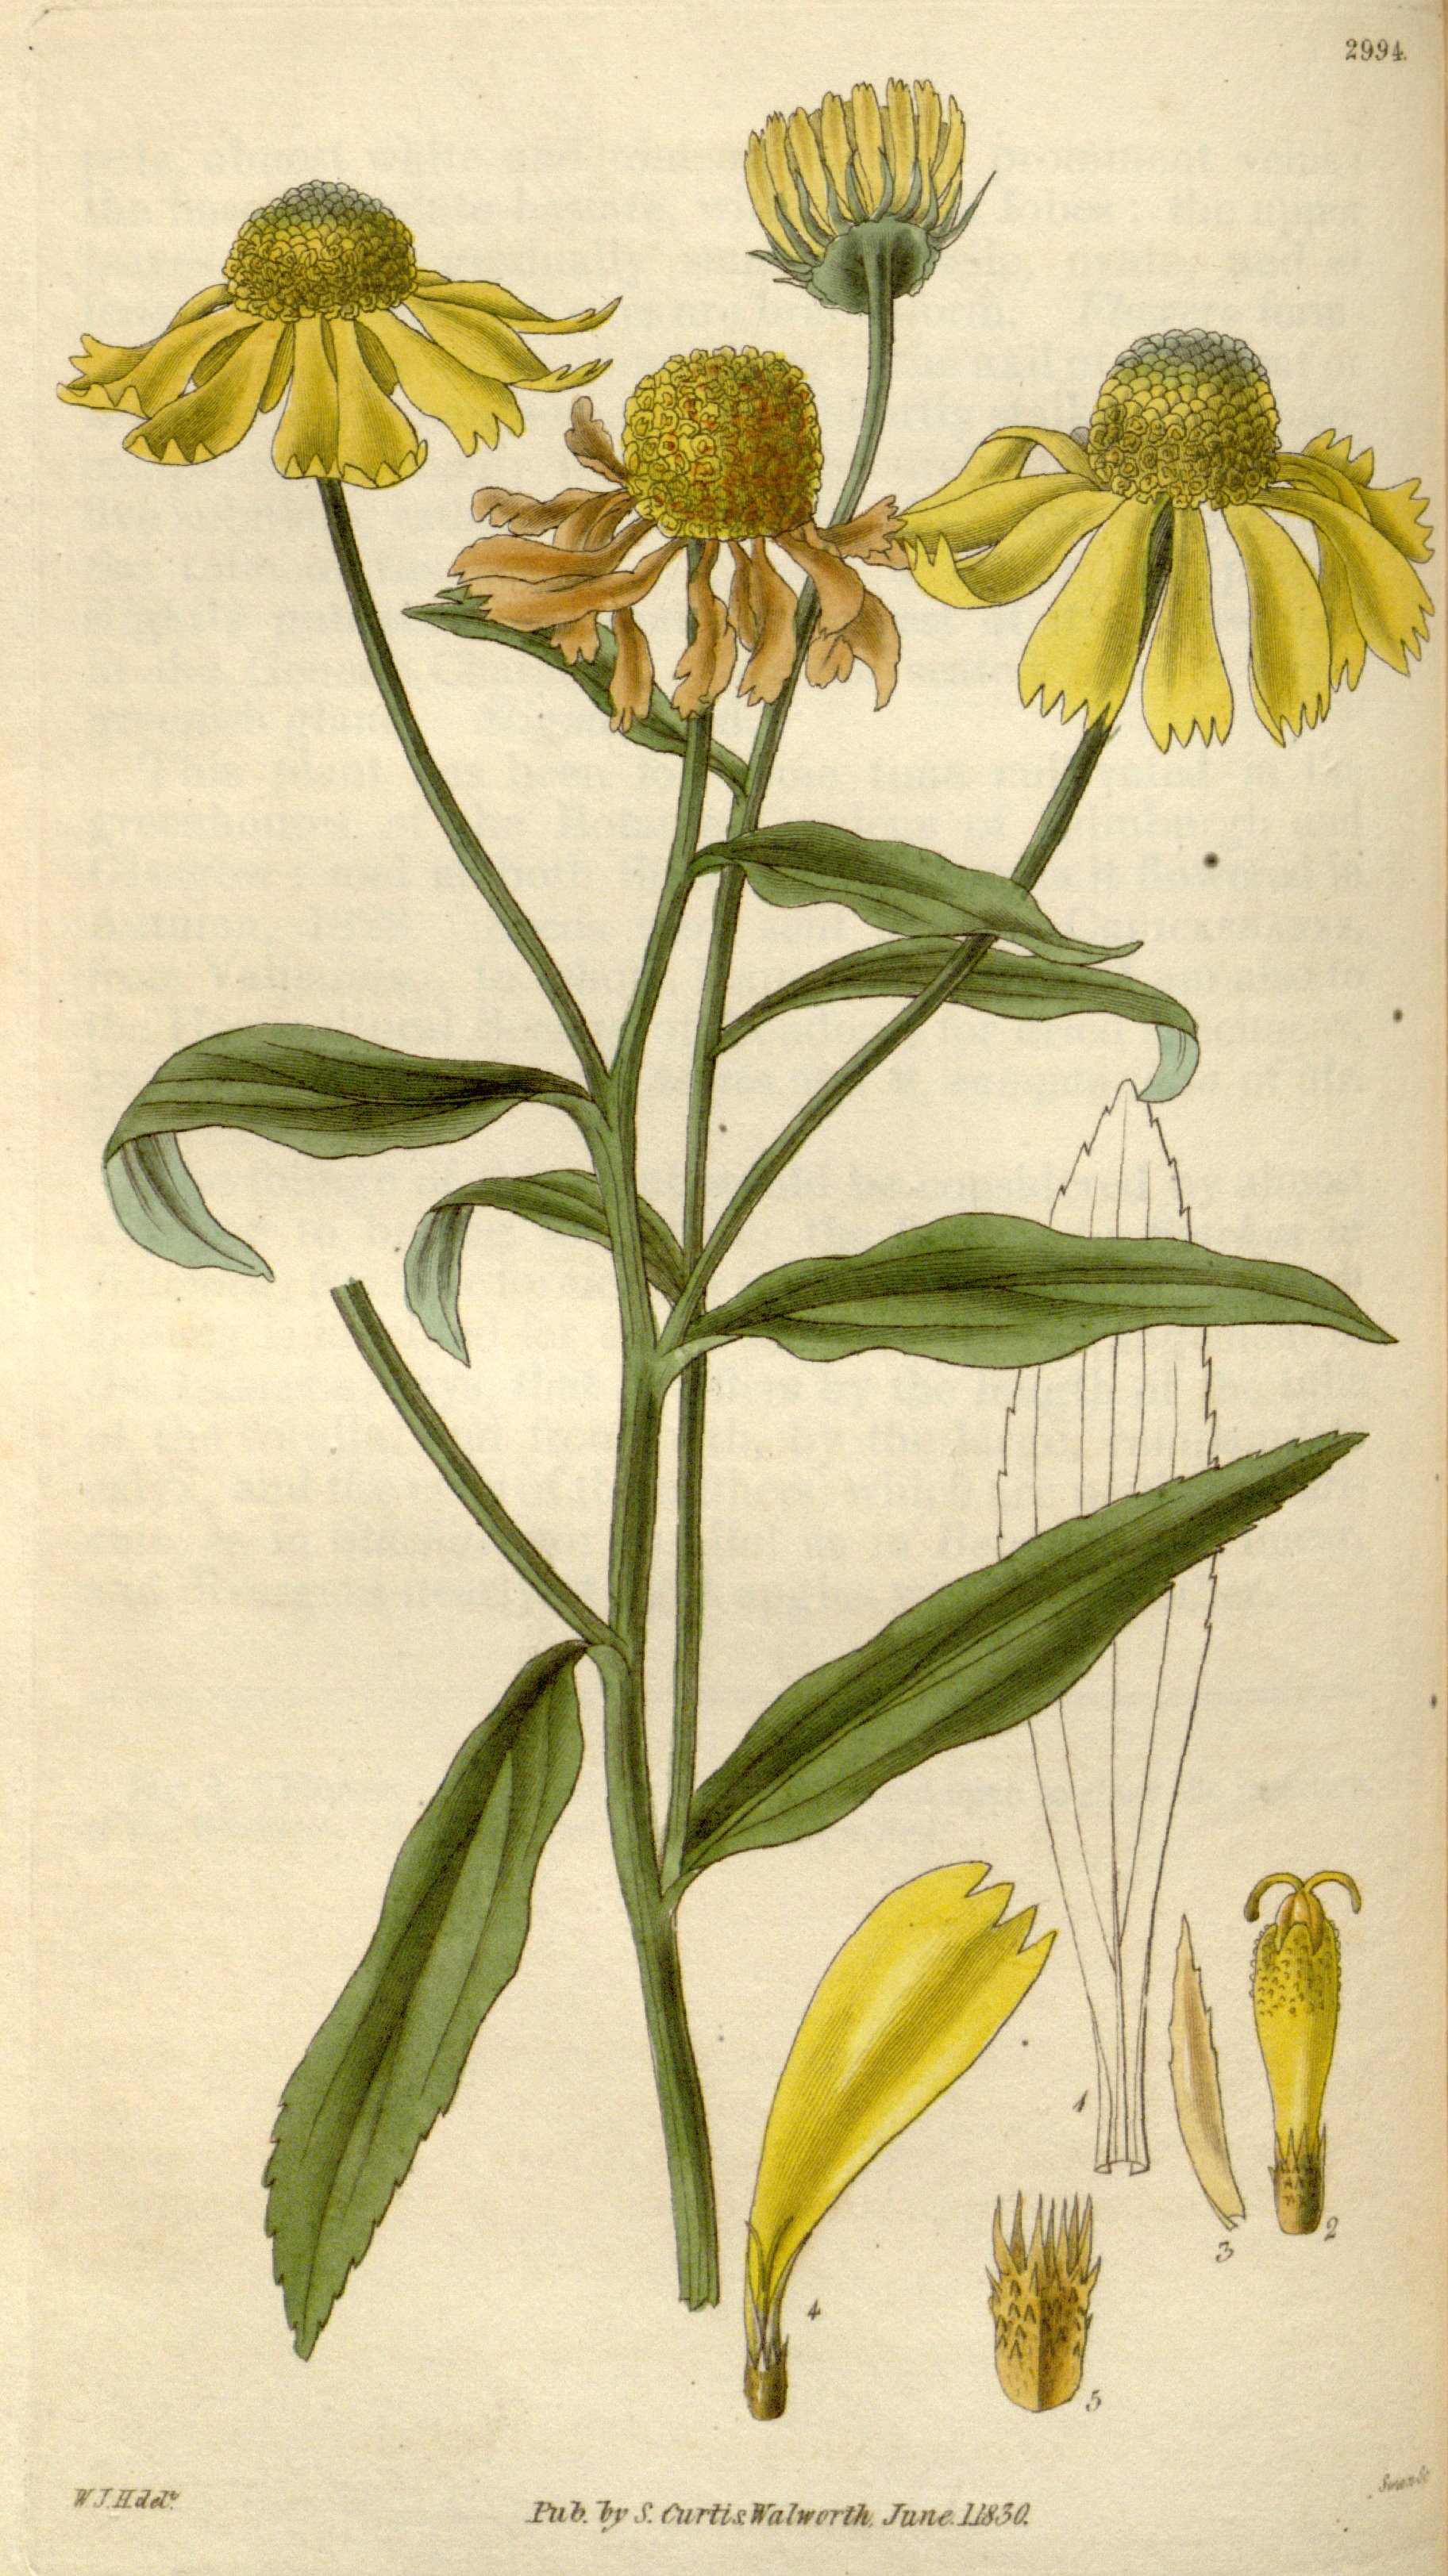 Common Sneezeweed (Helenium autumnale) botanical illustrationcirca 1796.